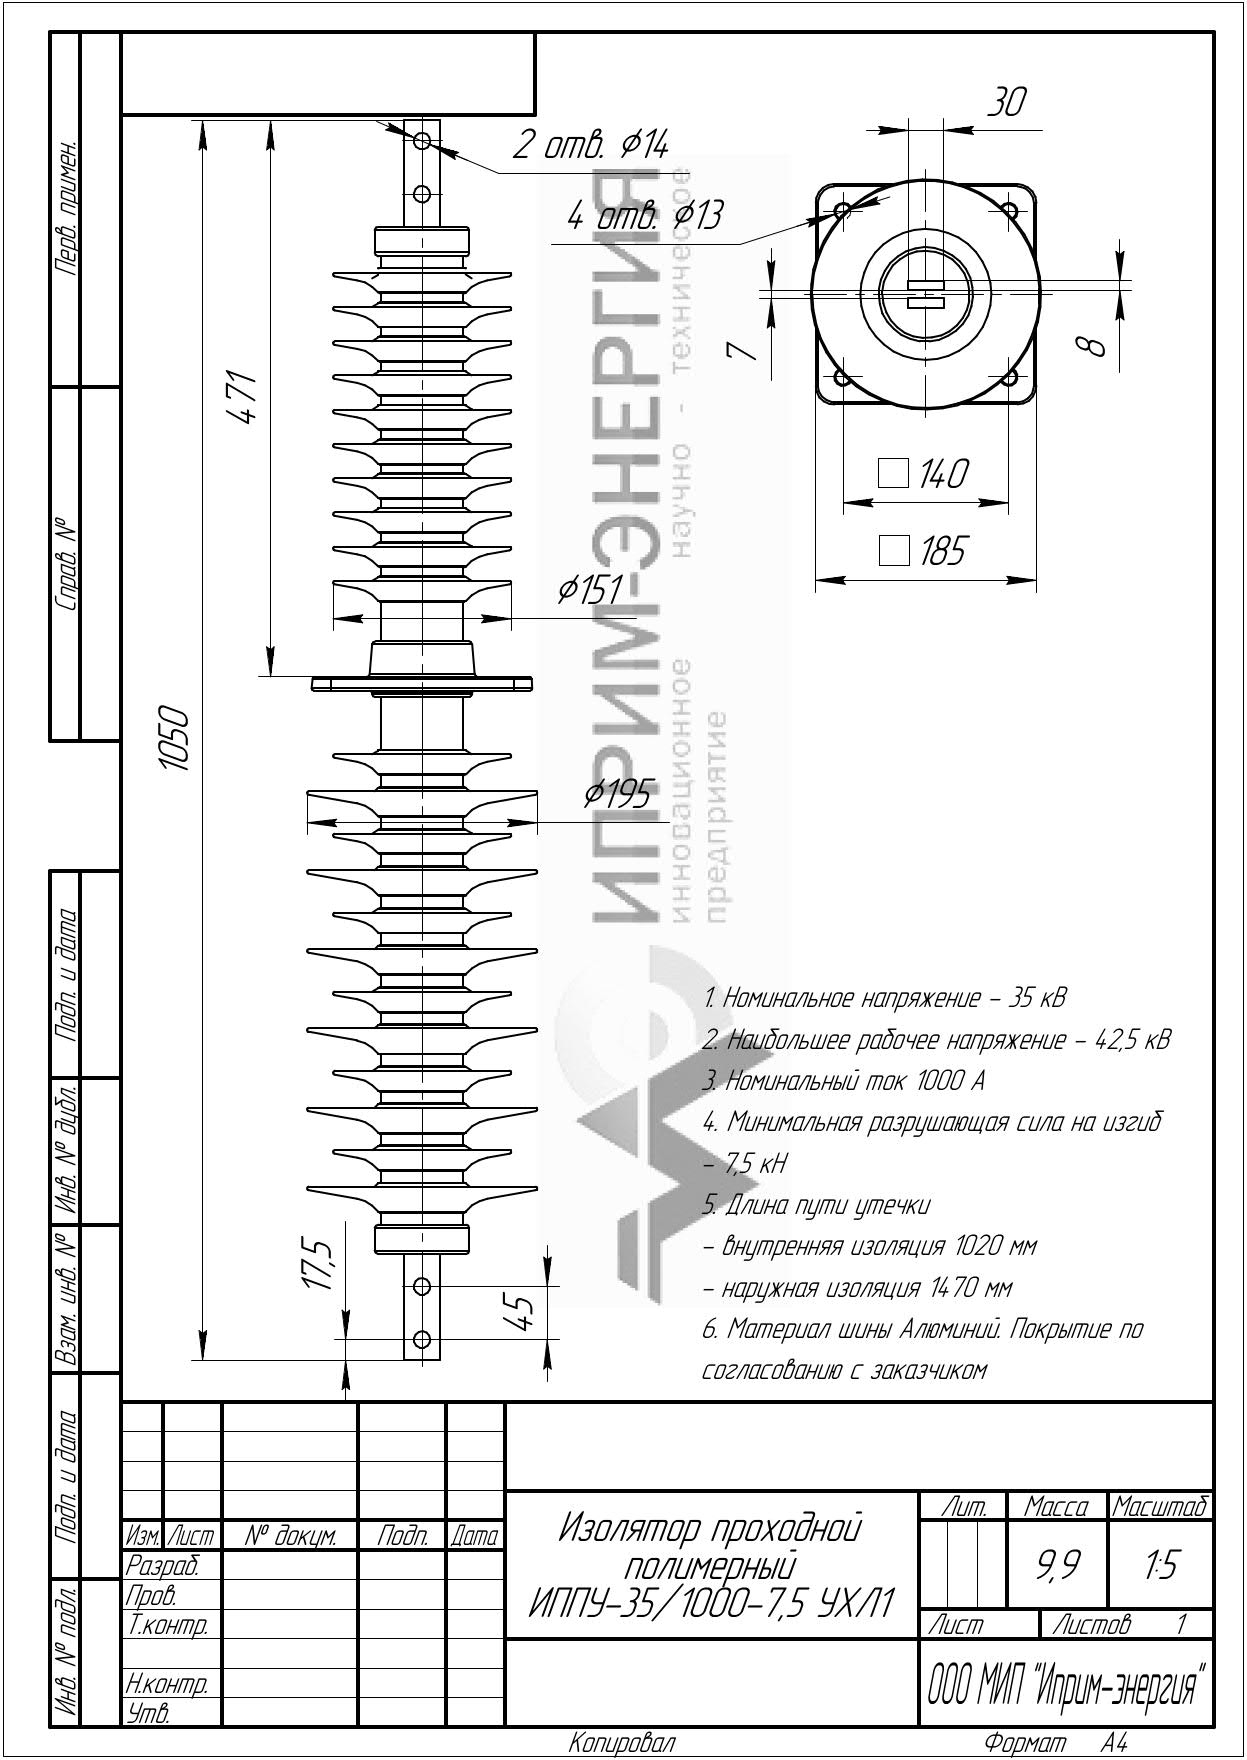 Изолятор проходной полимерный ИППУ-35/1000-7,5 УХЛ1 чертеж